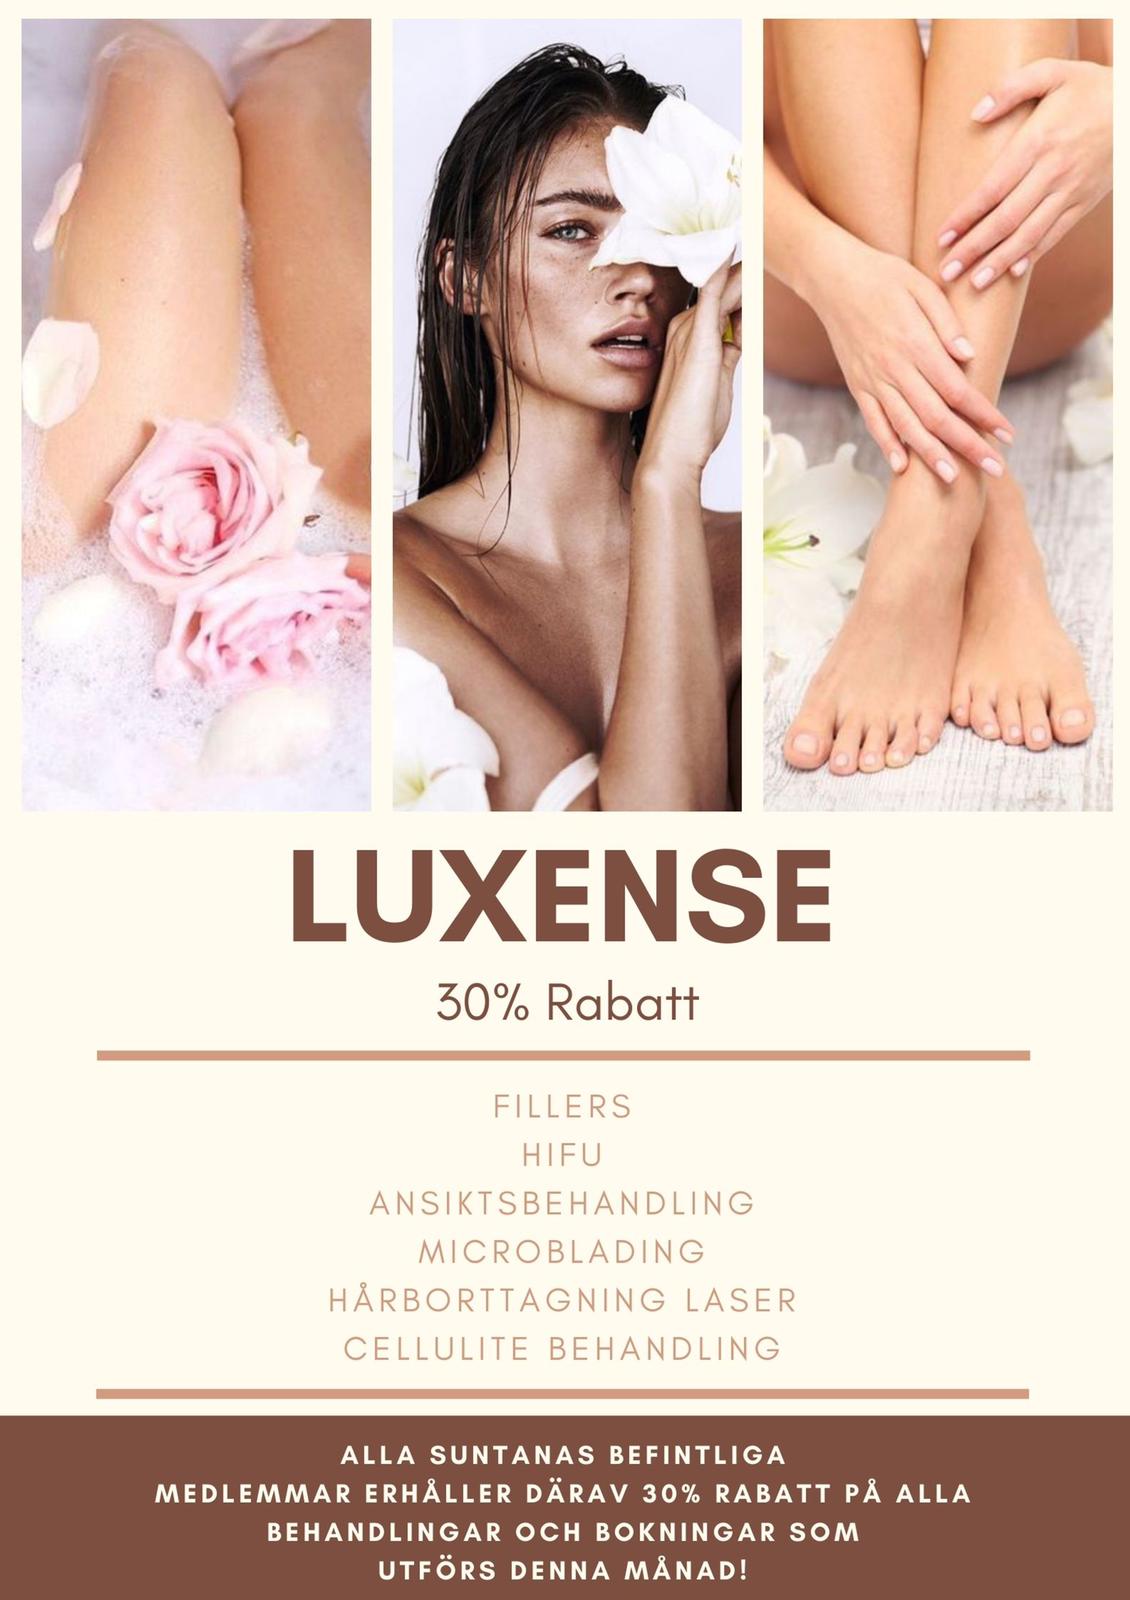 Luxense skönhetssalong